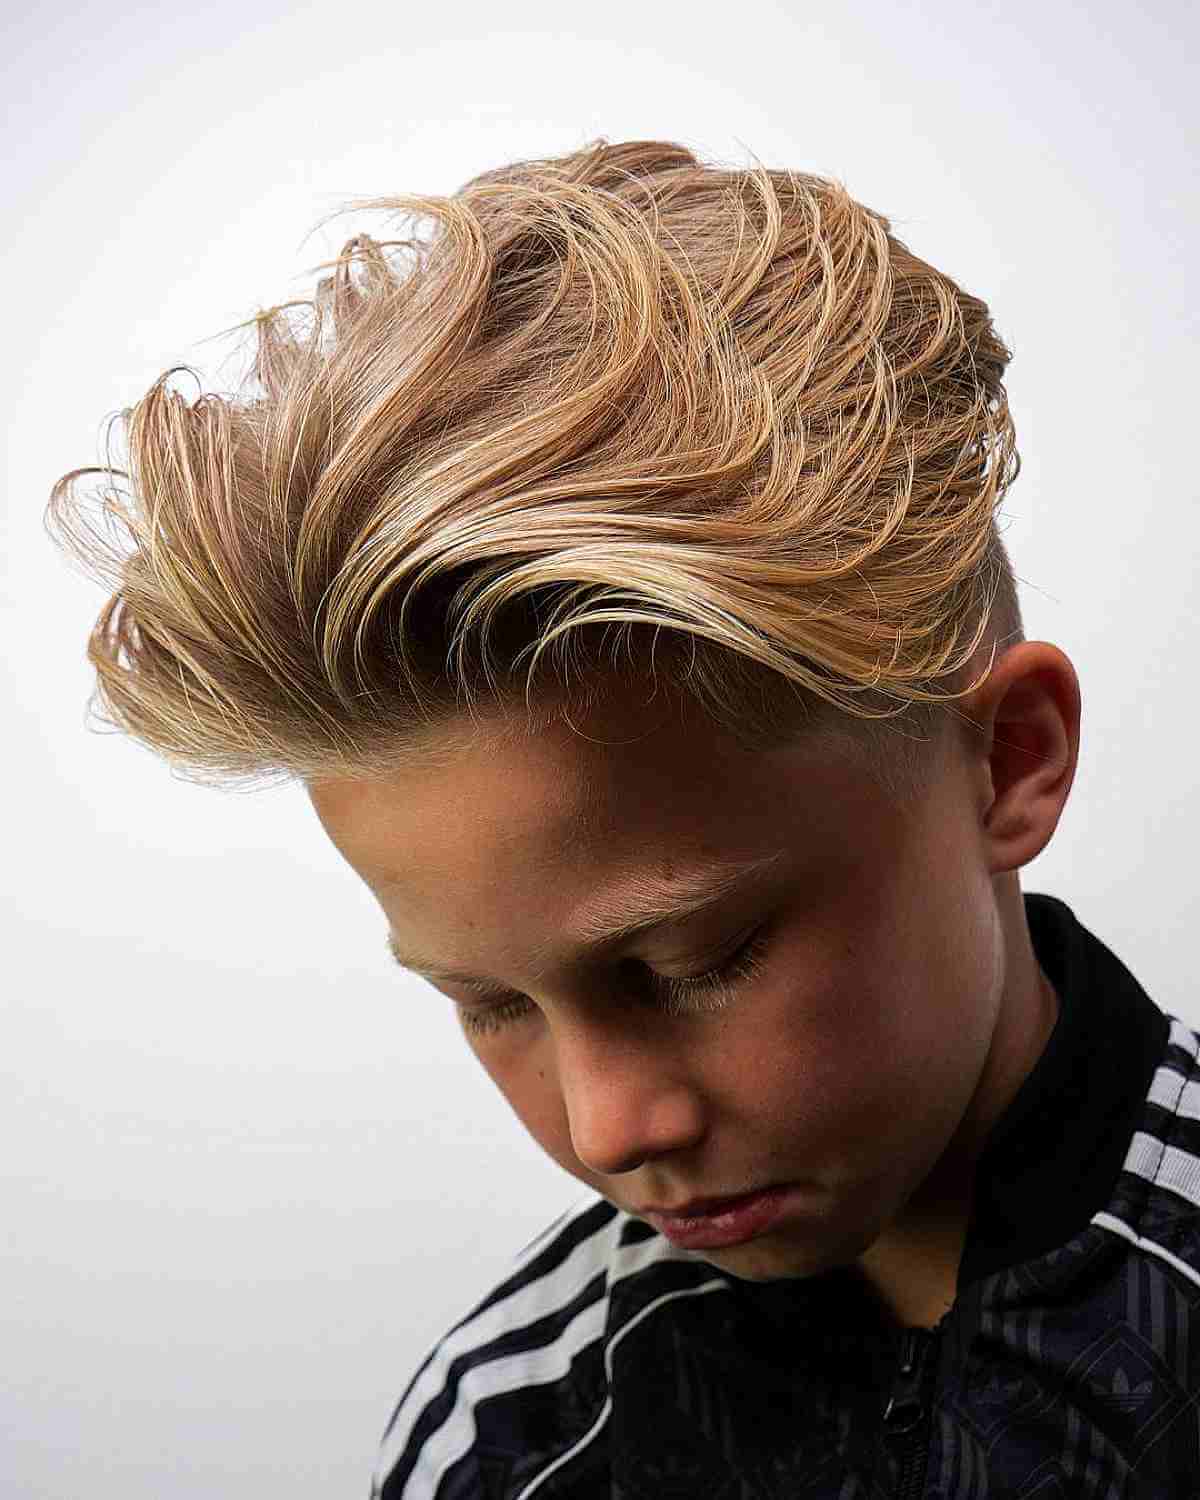 Langes blondes wallendes Haar an der Spitze für jüngere Jungen